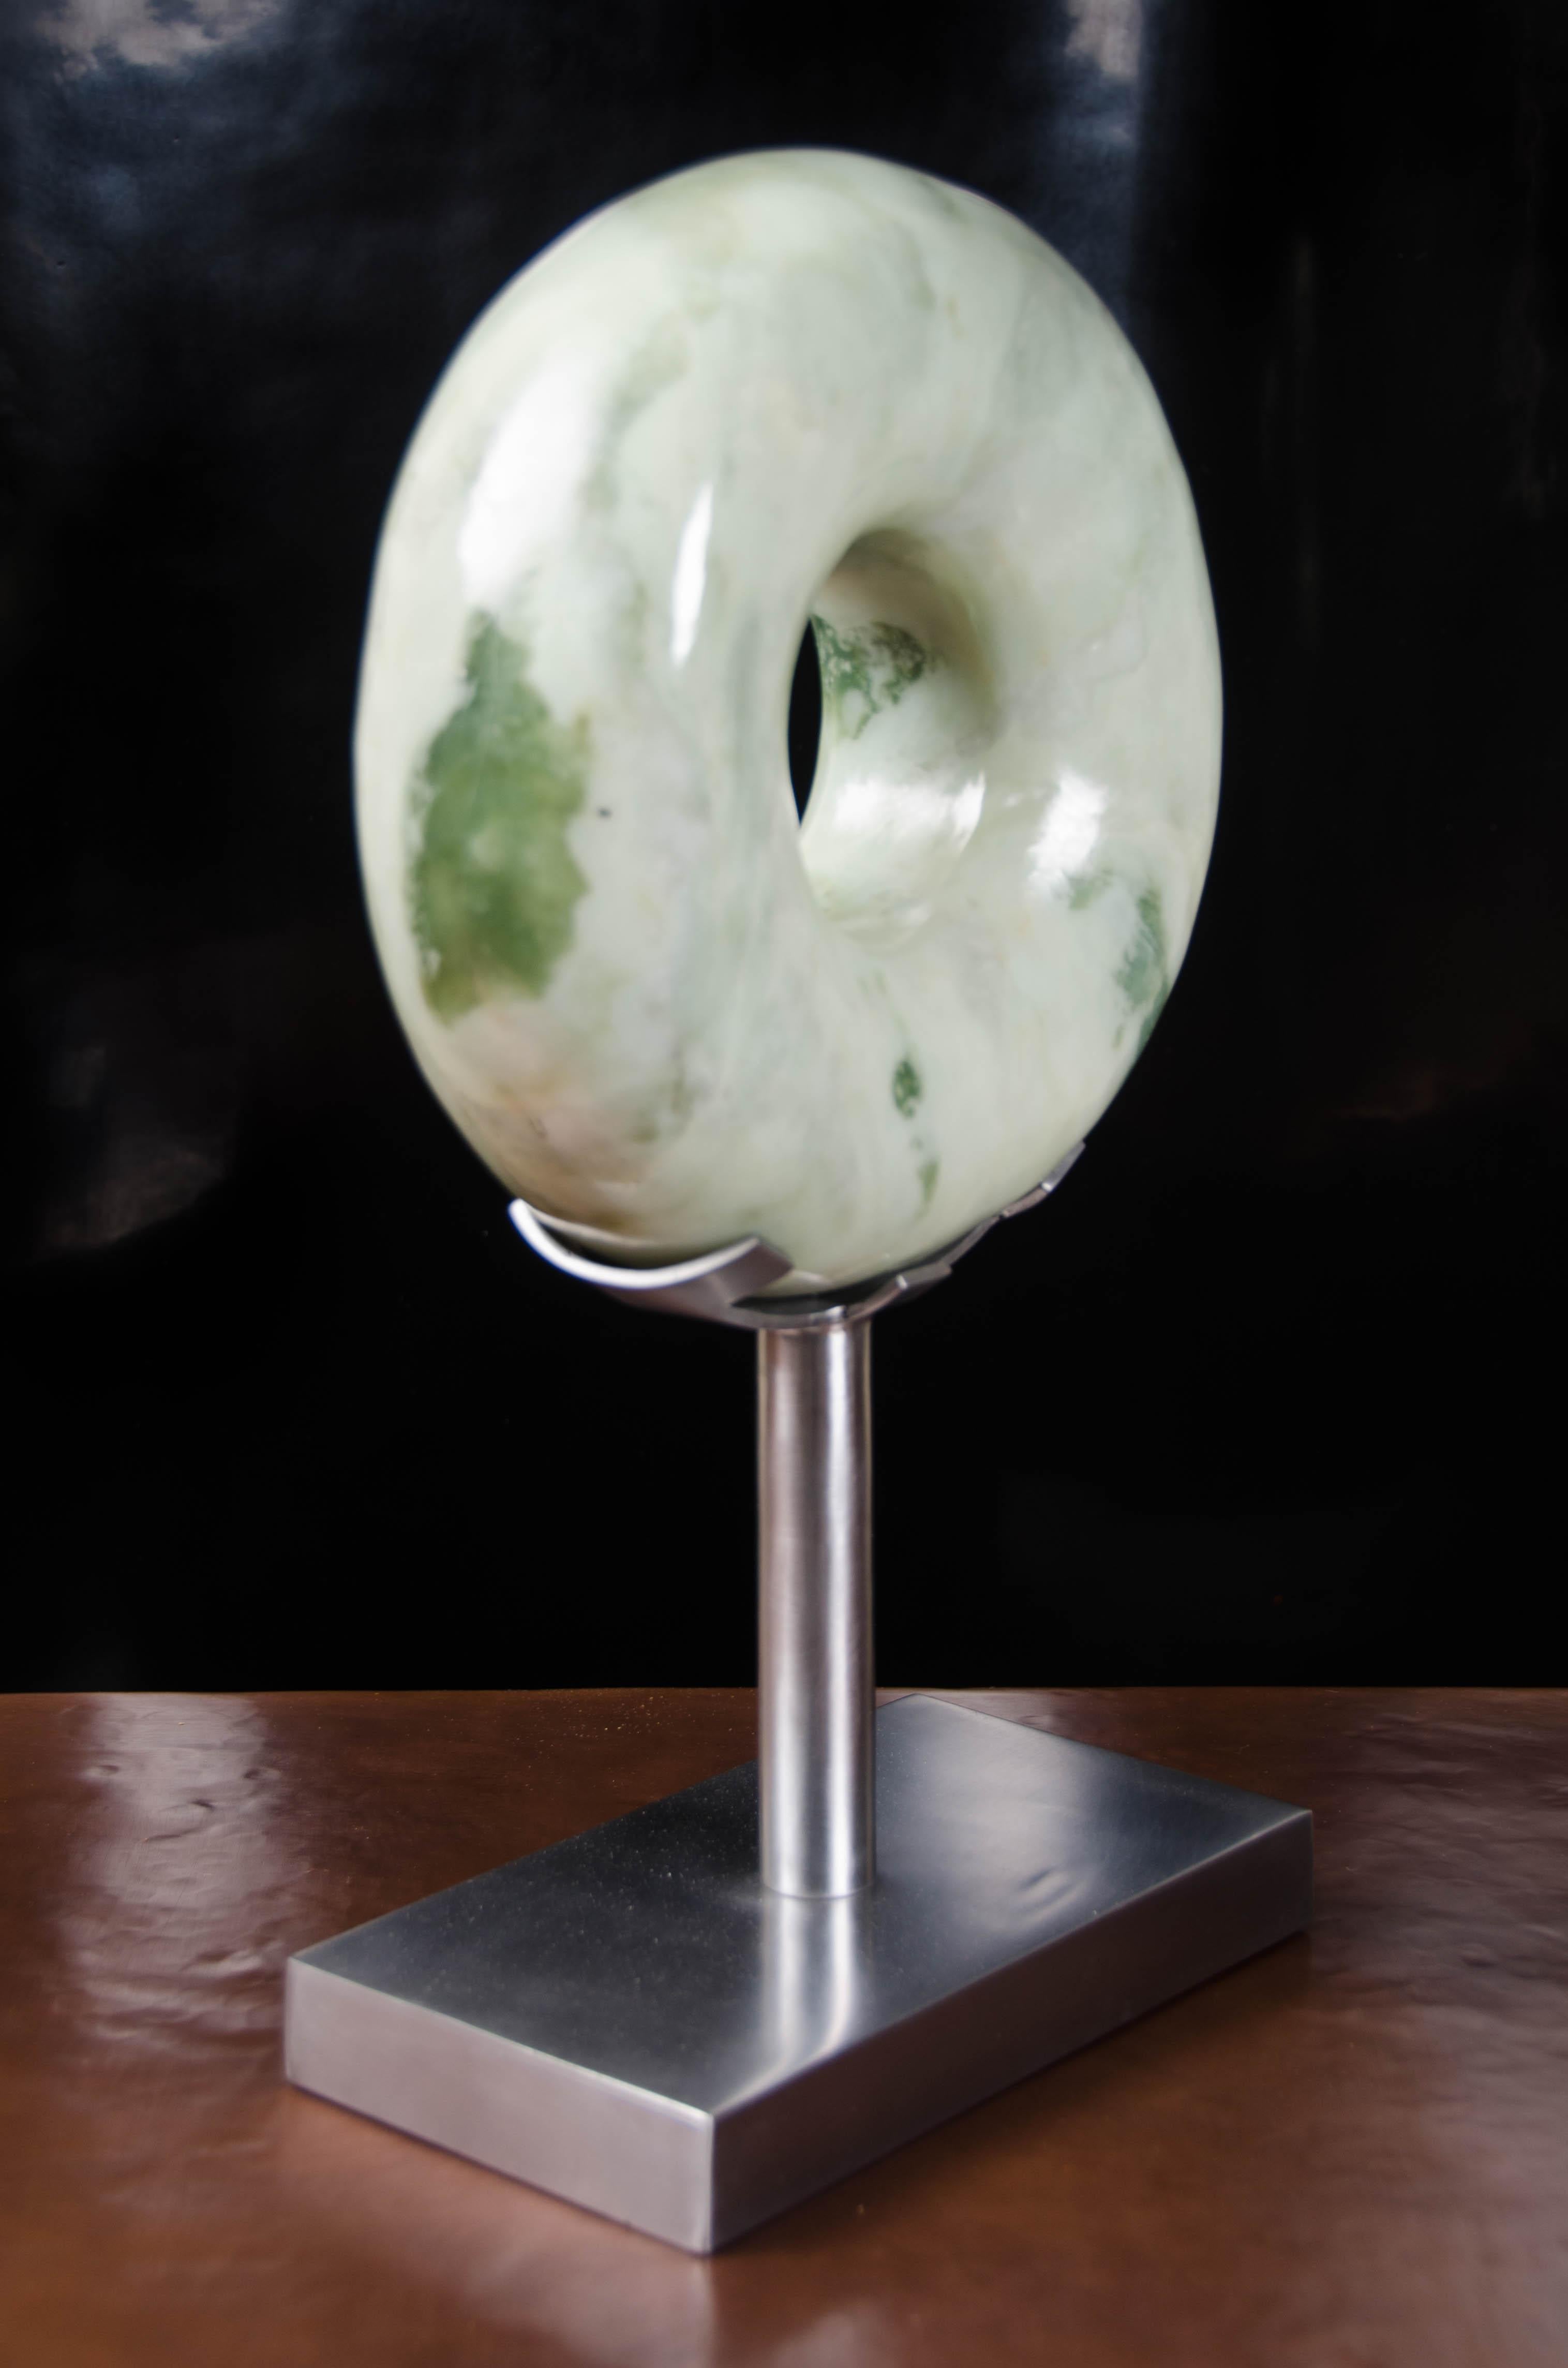 Sculpture zong arrondie
Jade néphrite
Sculpté à la main
Acier inoxydable
Repoussoir à main
Edition limitée
Les formes et les couleurs de chaque jade varient

Connue sous le nom de « pierre du ciel », la jade néphrite est prisée pour sa